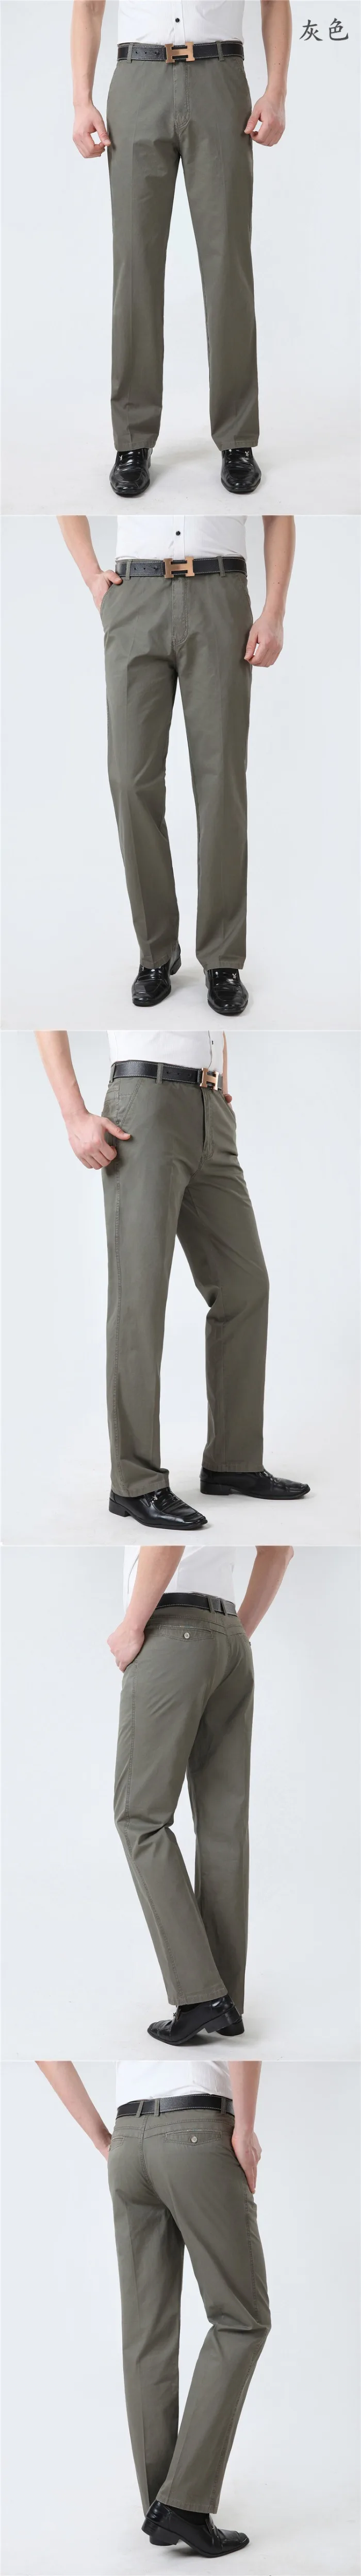 Мужские брюки летние мешковатые новые повседневные брюки мужские хлопковые облегающие деловые брюки модные брюки Мужская брендовая одежда прямые брюки